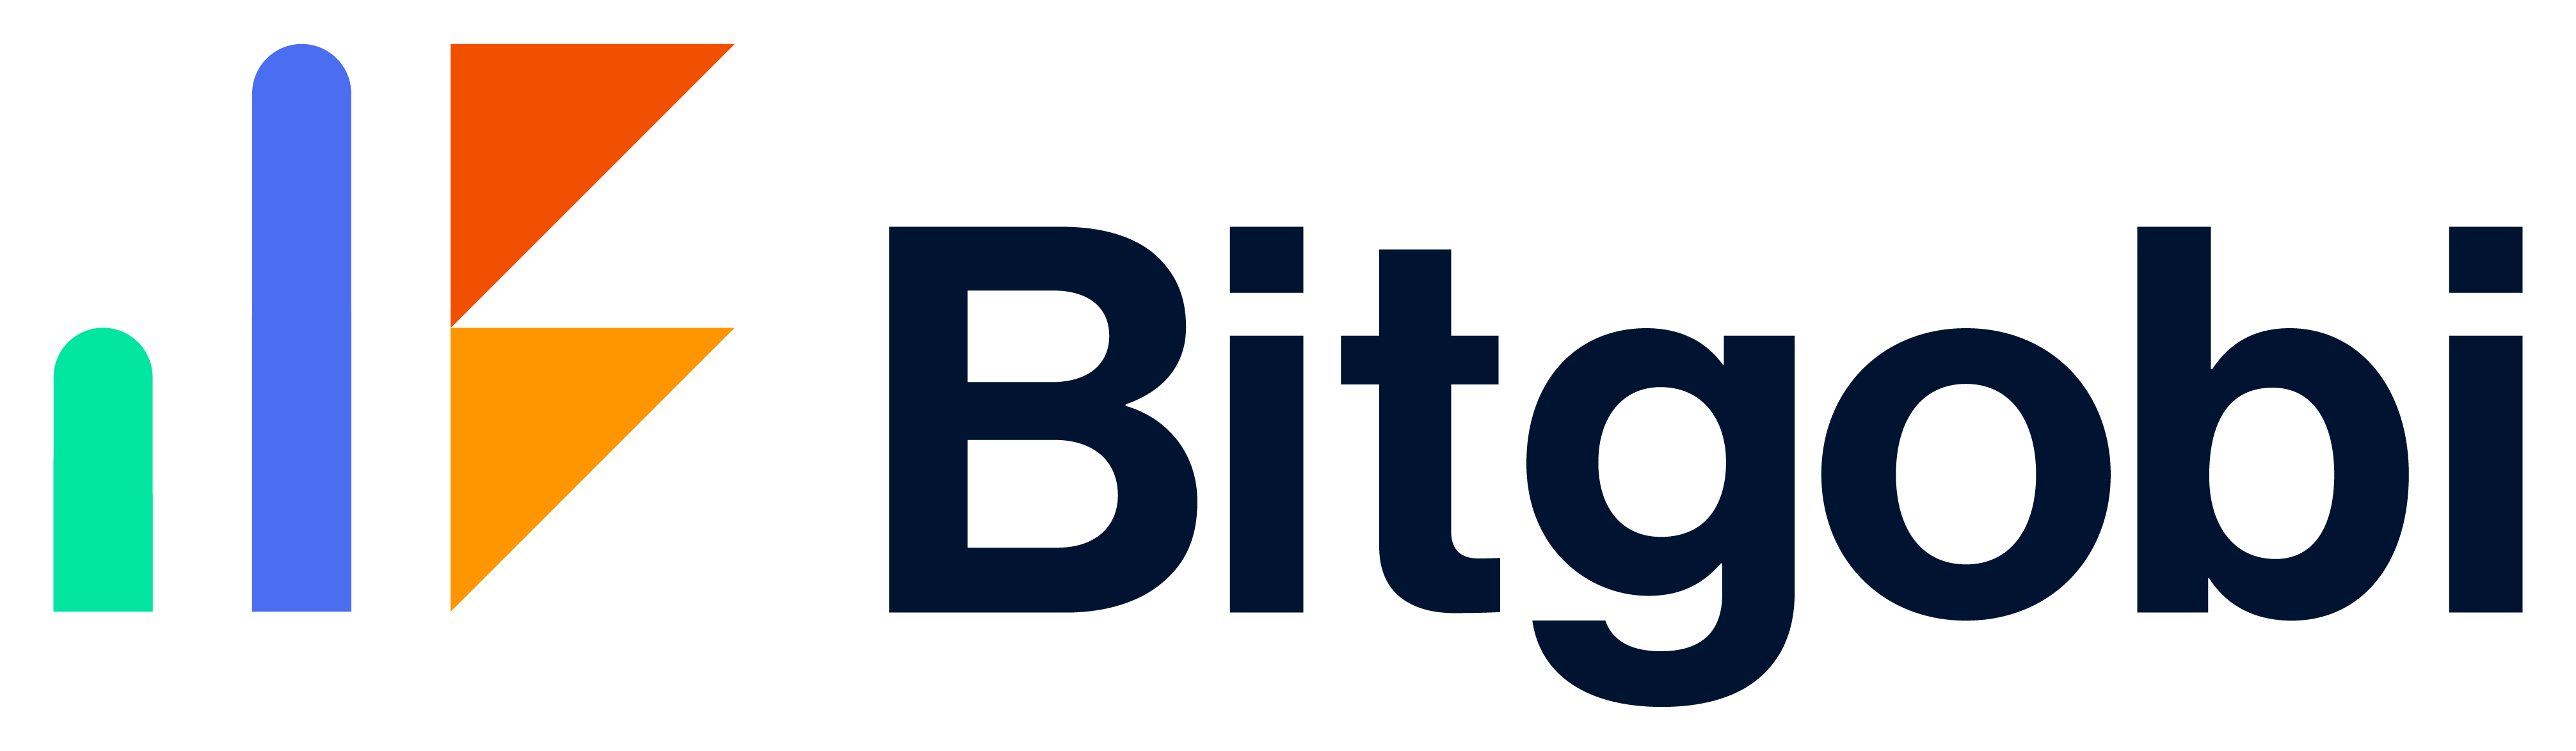 Bitgobi logo